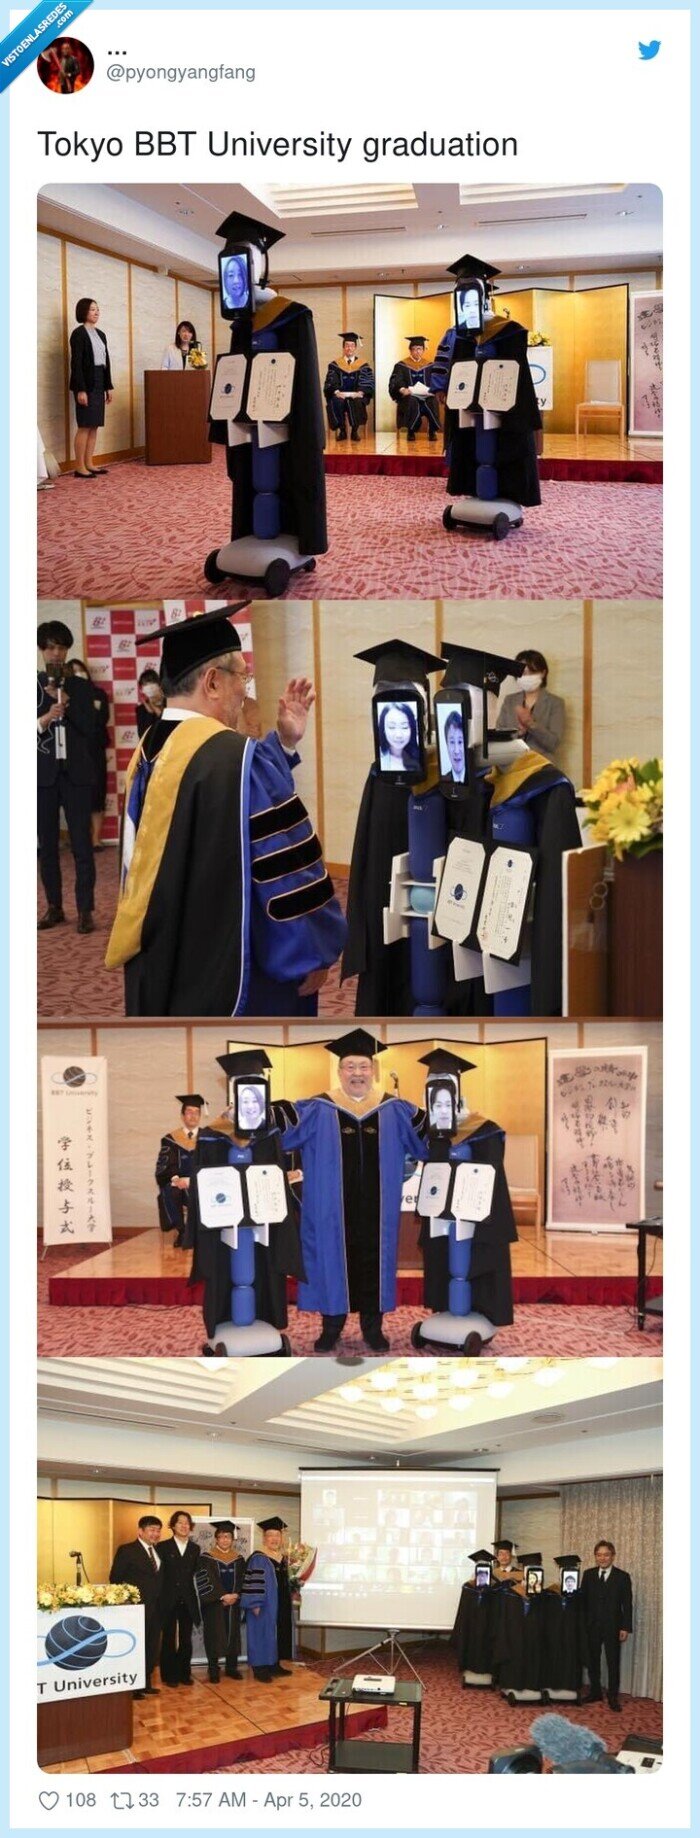 550807 - Estudiantes japoneses son reemplazados por robots en una ceremonia de graduación durante la pandemia